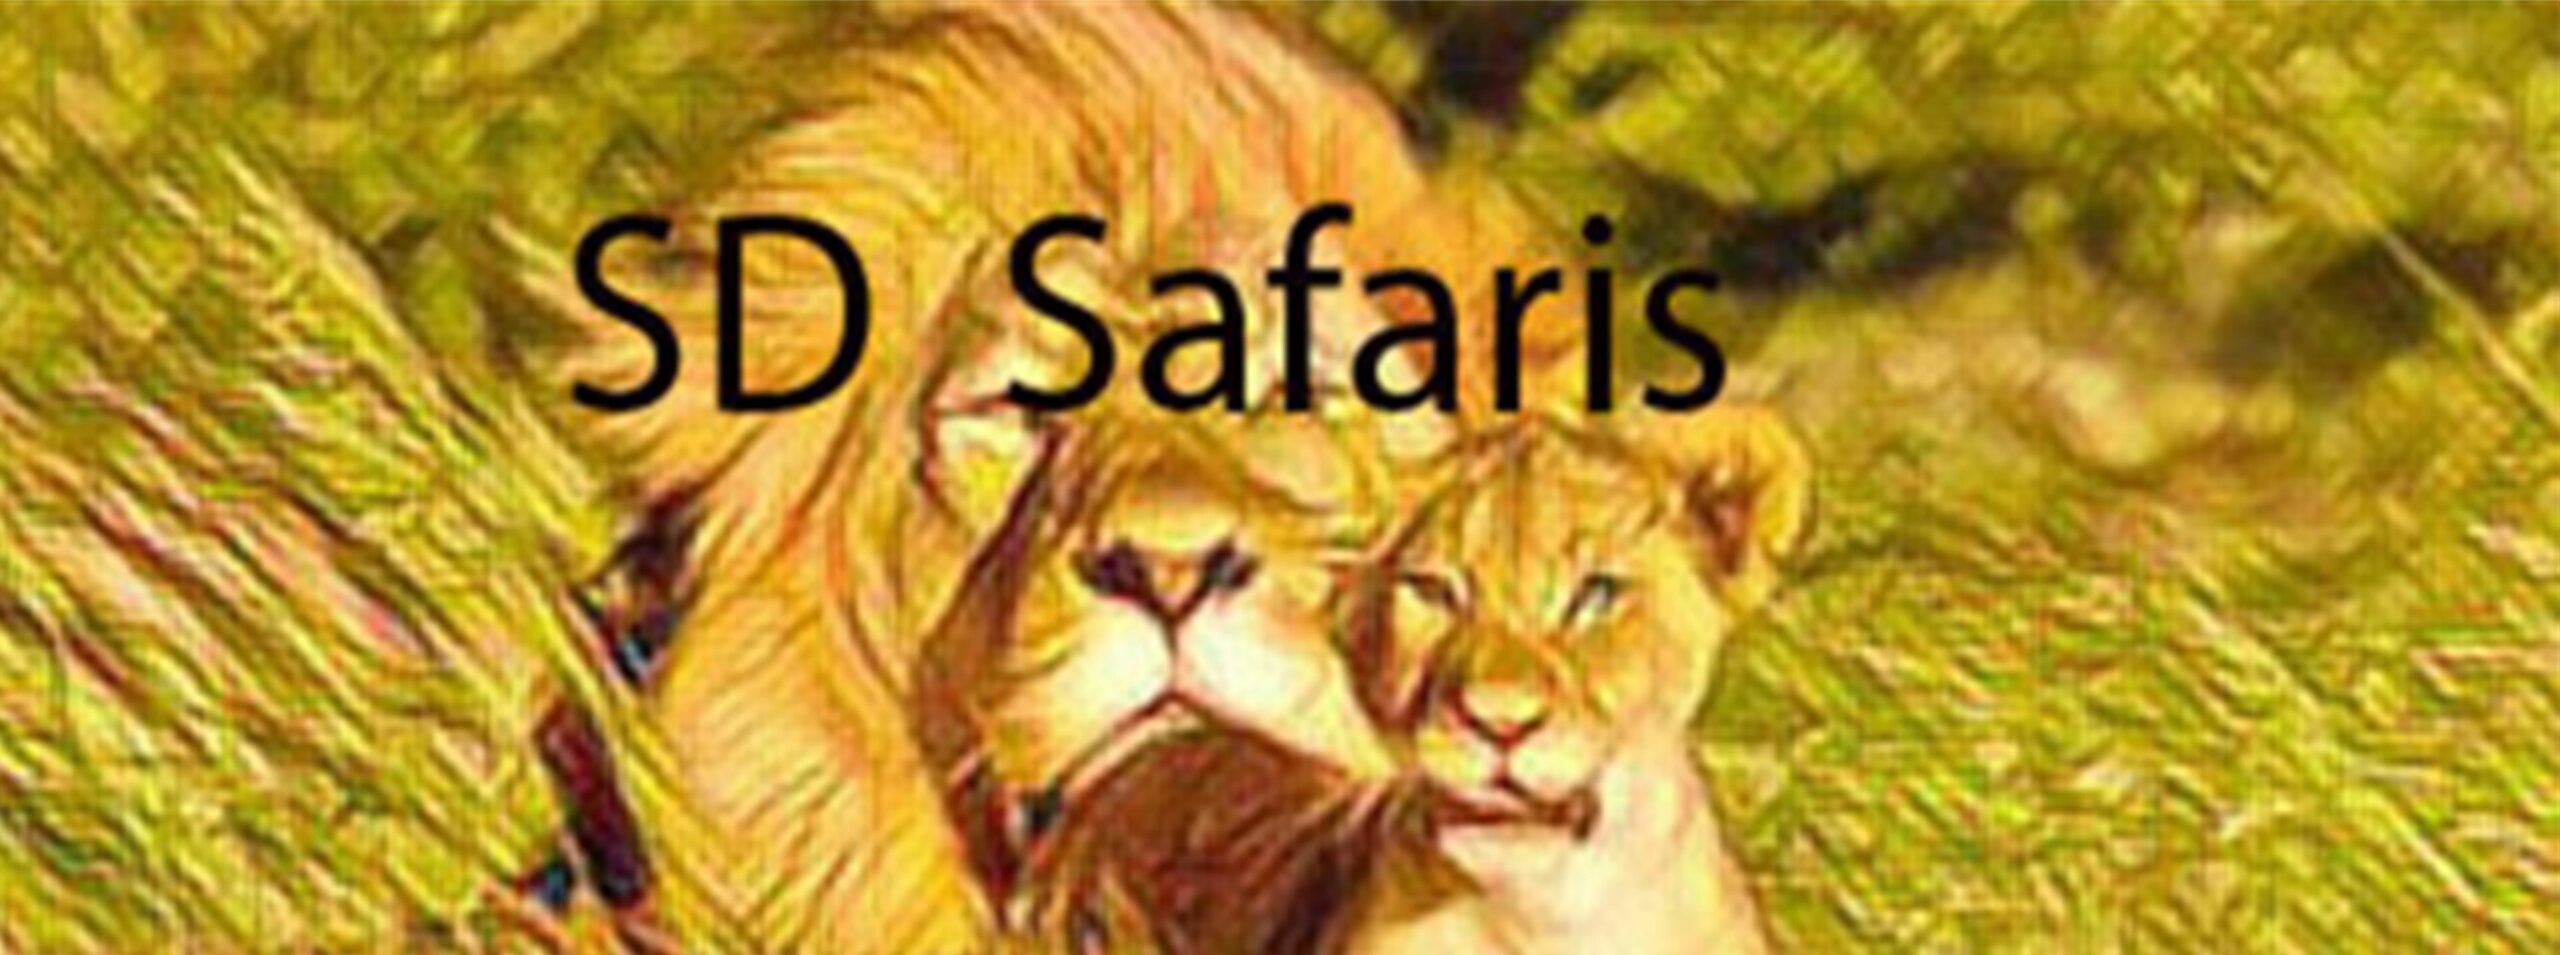 SD Safaris Tanzania